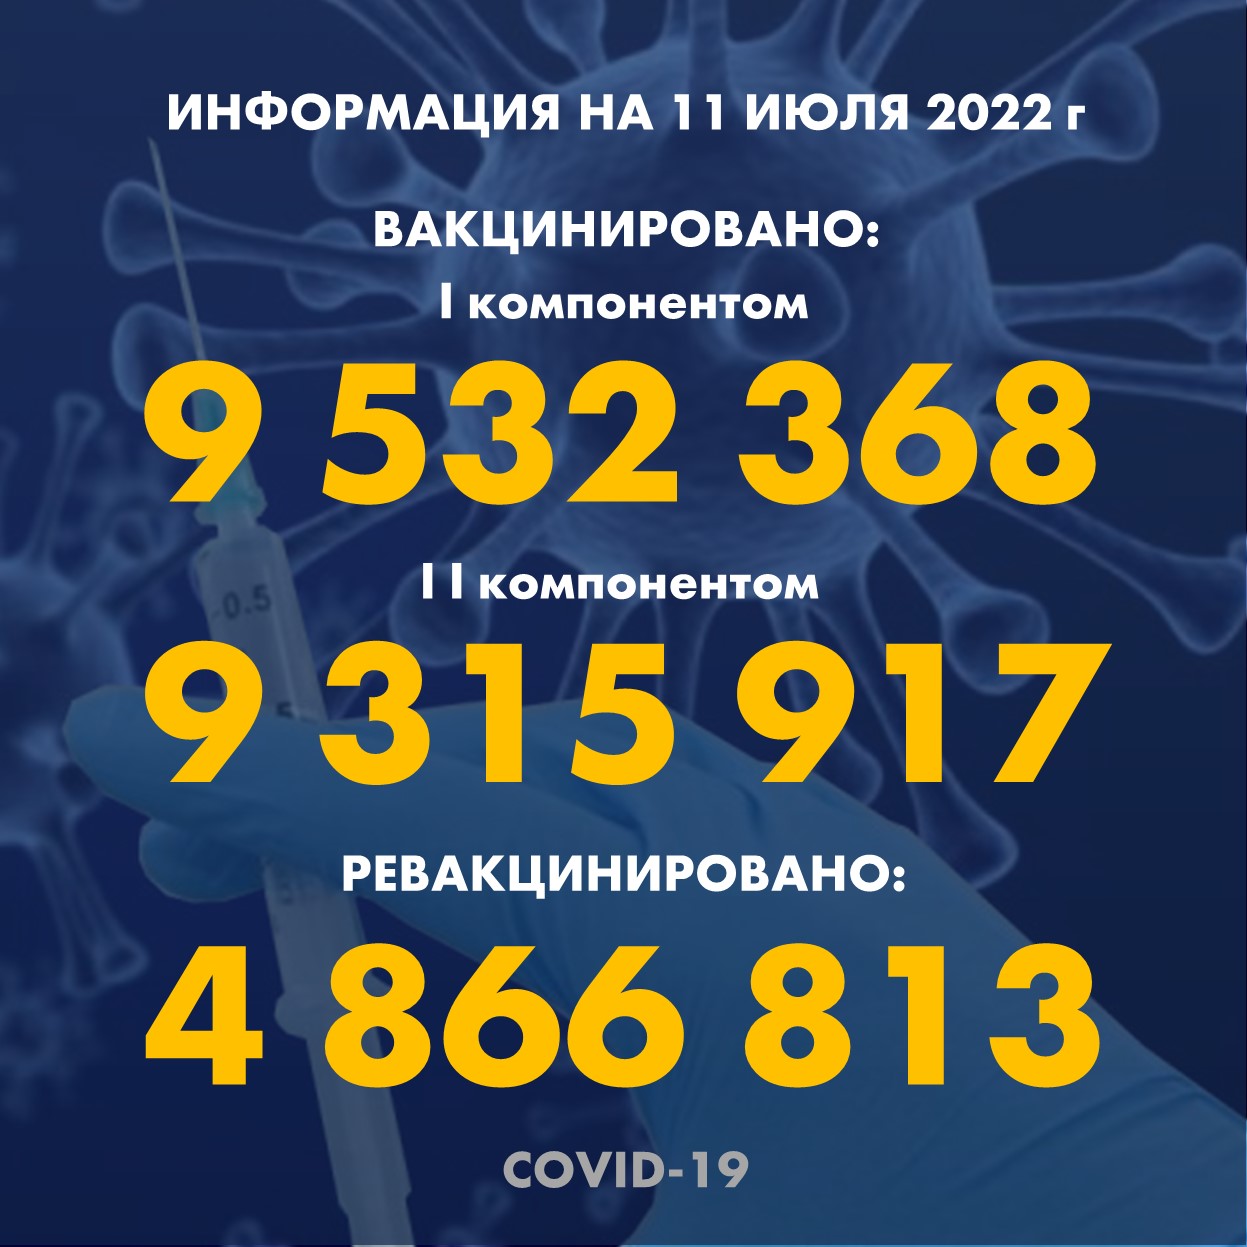 I компонентом 9 532 368 человек провакцинировано в Казахстане на 11.07.2022 г, II компонентом 9 315 917 человек. Ревакцинировано – 4 866 813